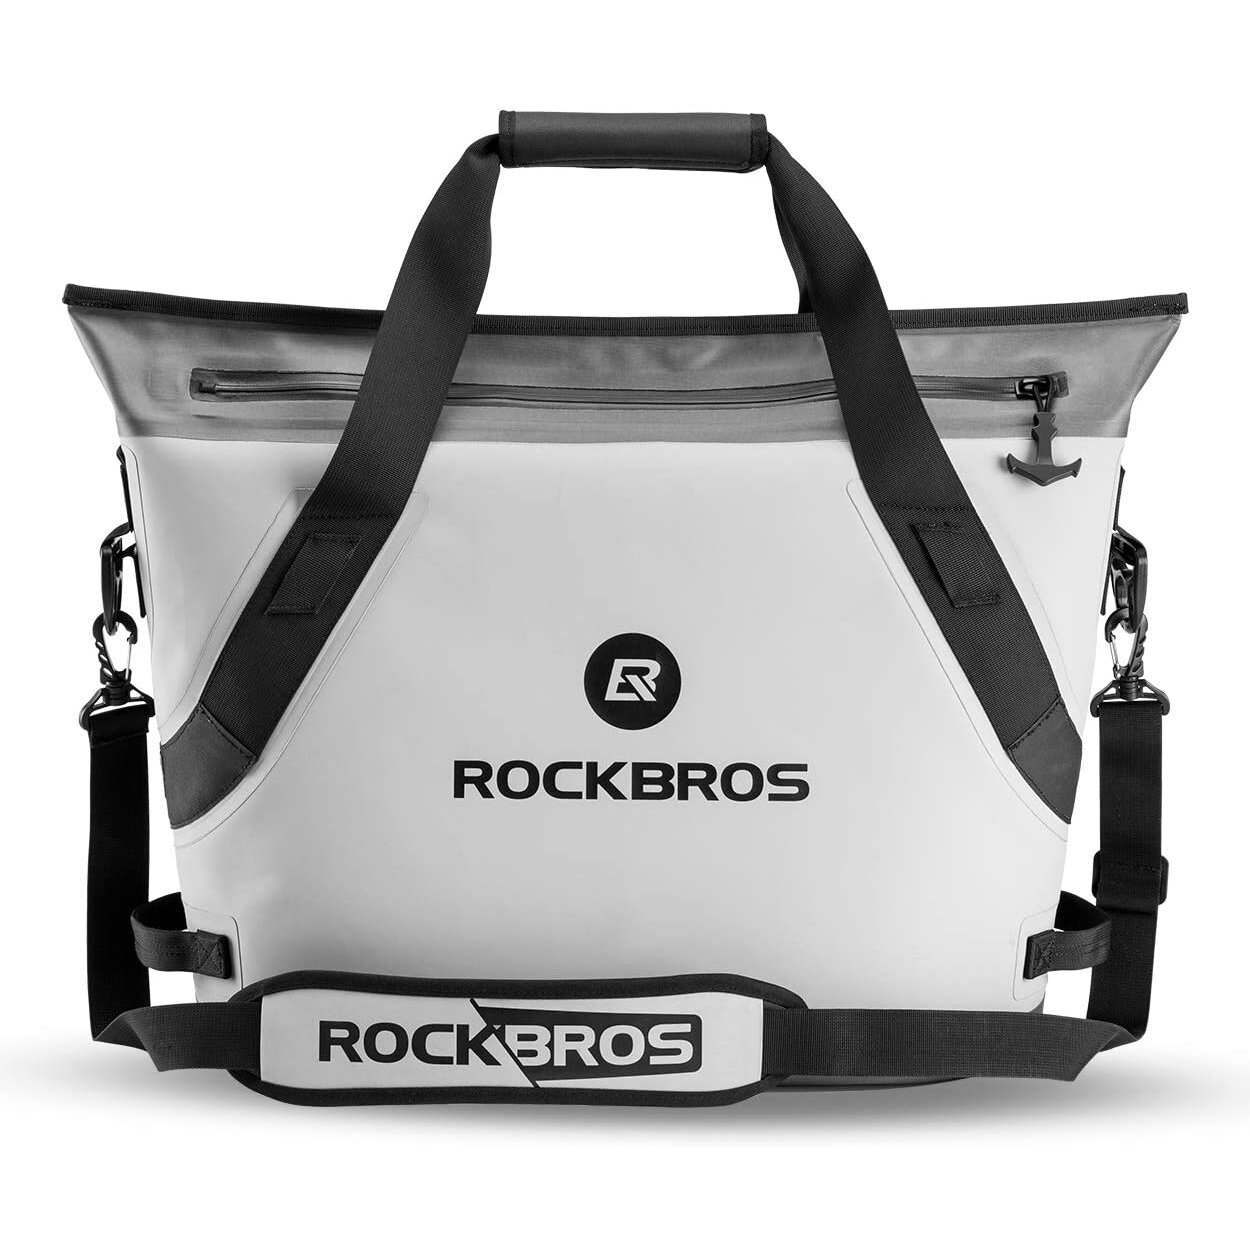 Bolsa térmica ROCKBROS BX-003 de 22L, à prova d'água, com gelo, para almoço, camping, piquenique, isolada termicamente com folha, bolsa de mão.